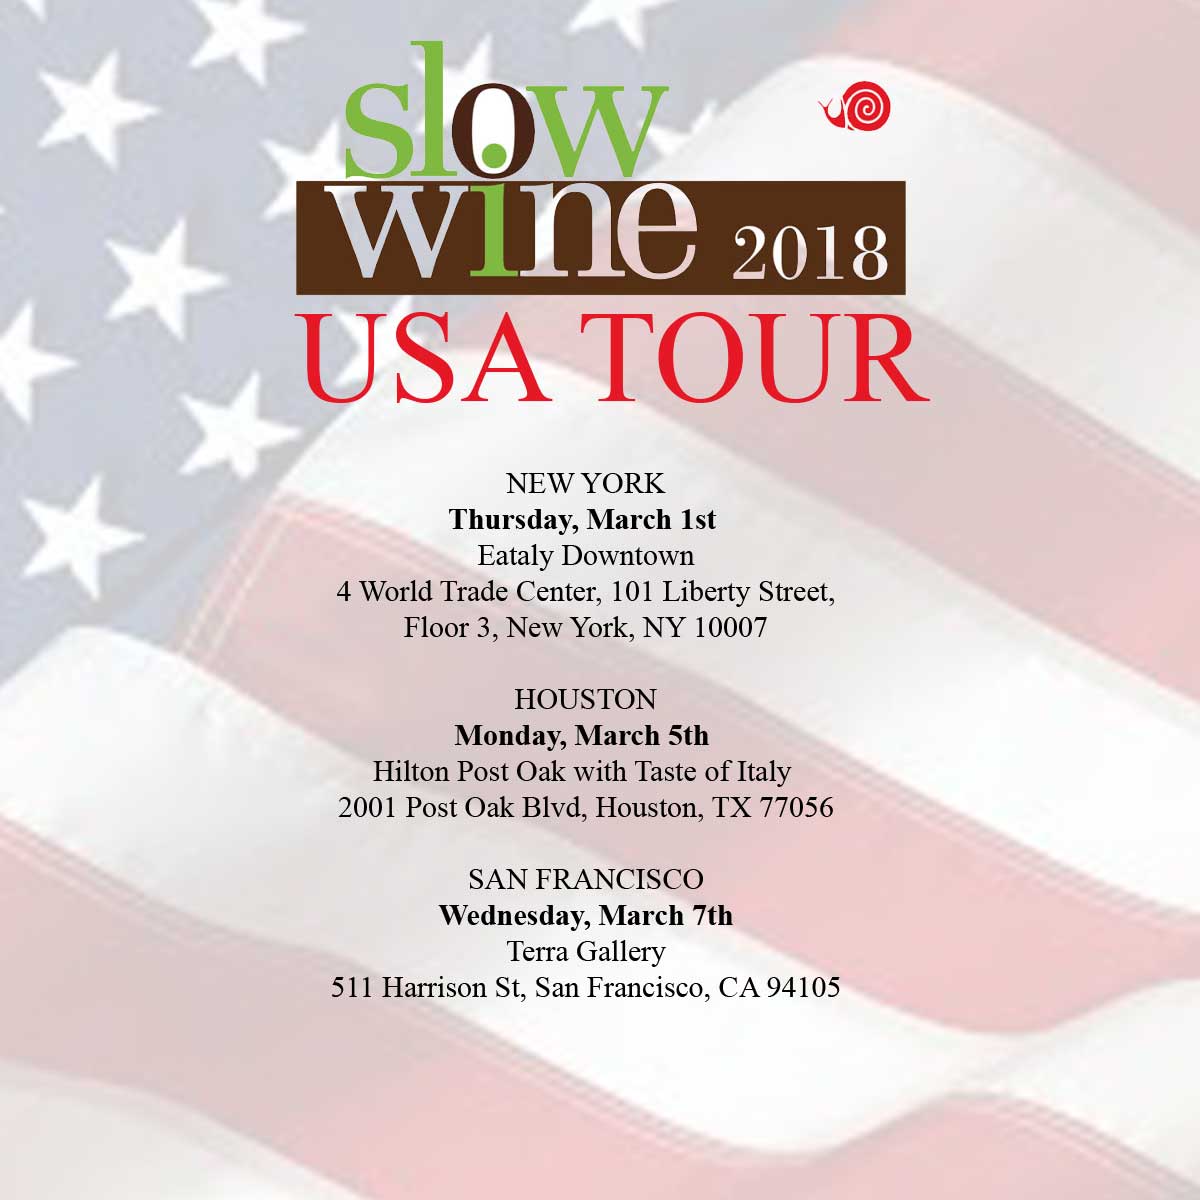 Slow-Wine-2018-USA-tour-Marotti-Campi-Verdicchio-Lacrima-di-Morro